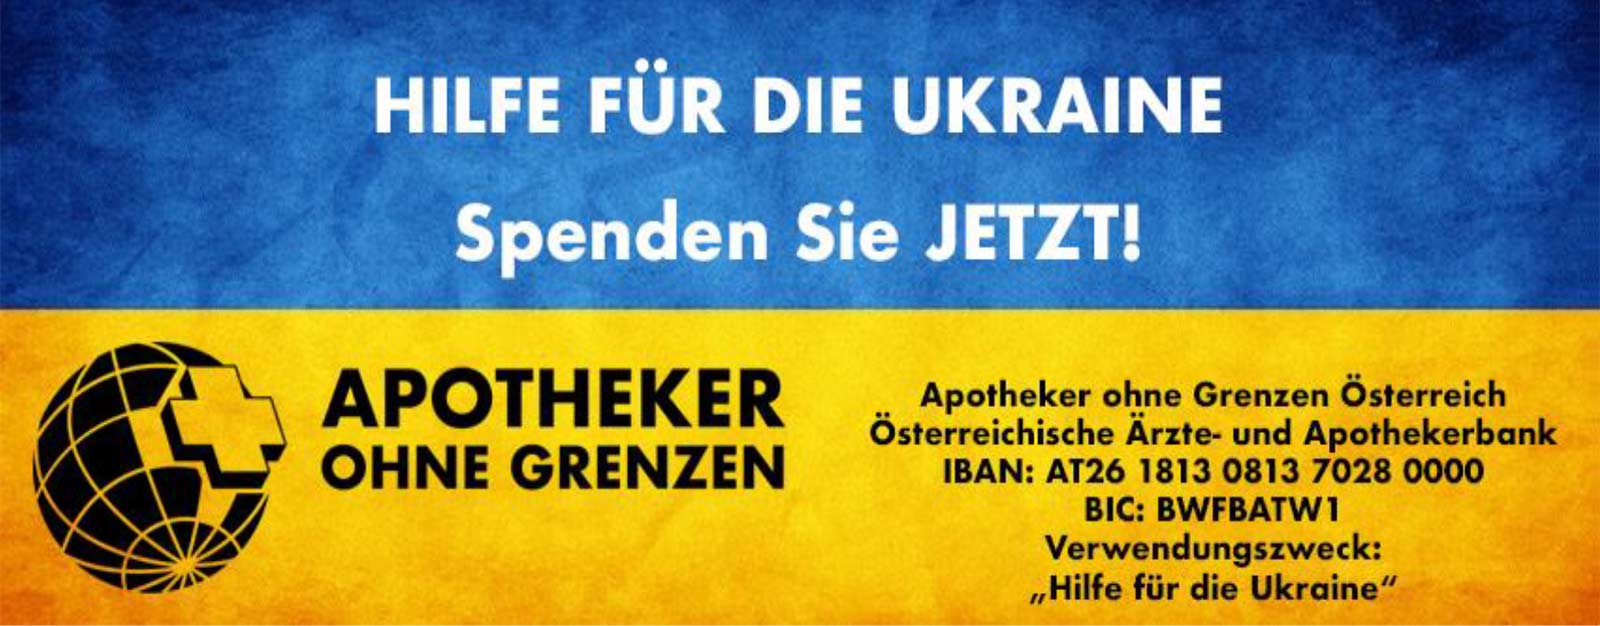 Apotheker hne Grenzen - Spenden für die Ukraine